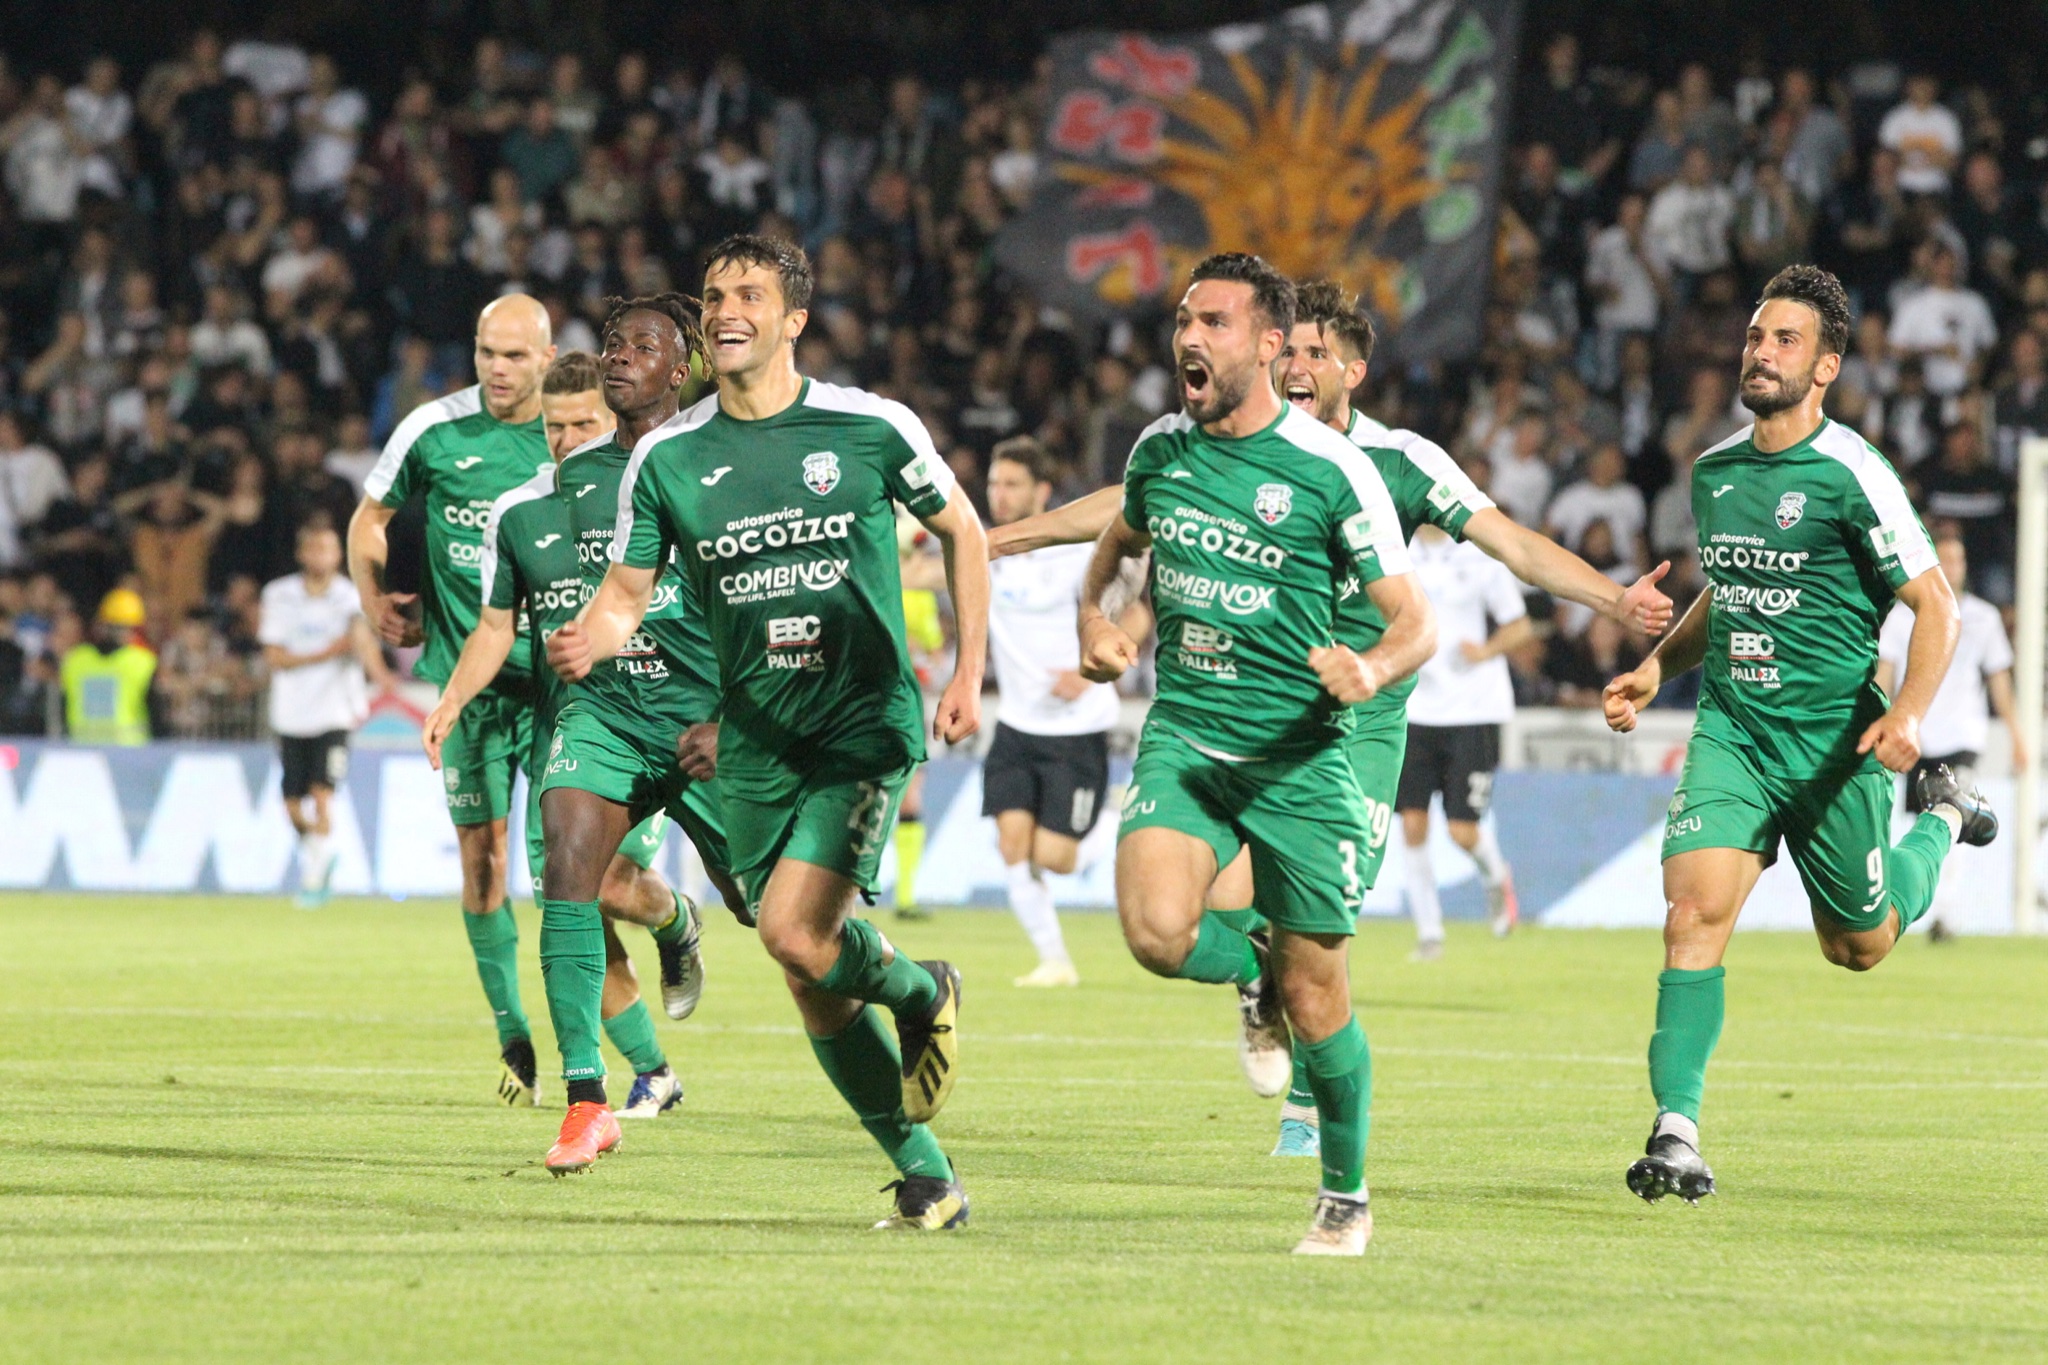 Serie C, playoff: Palermo avanti con il brivido, Foggia eliminato, impresa del Monopoli